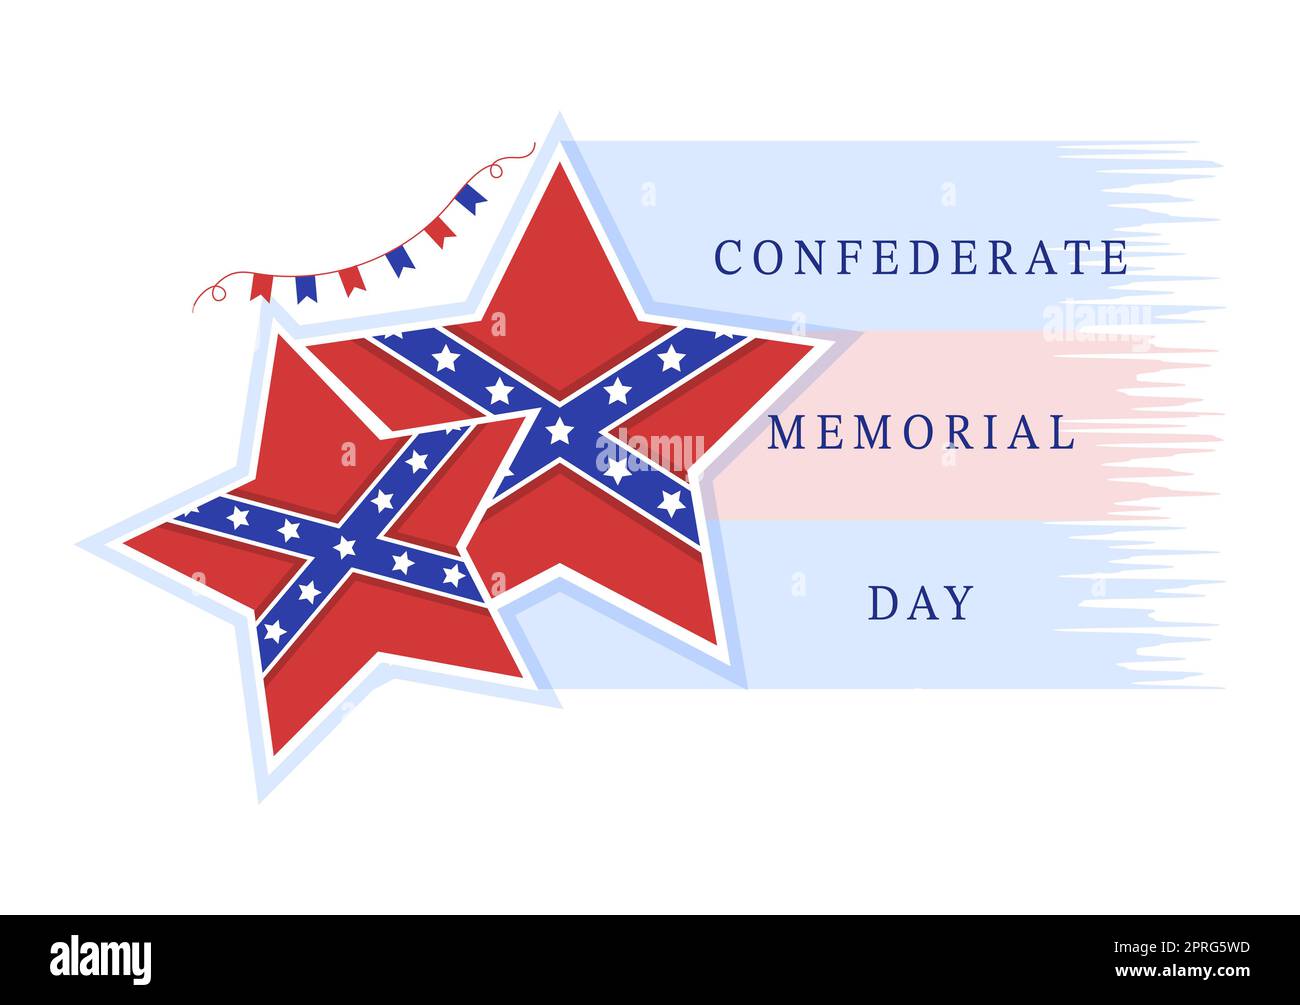 Konföderierte Memorial Day Vorlage Handgezeichnete Cartoon flache Illustration für Gedenken Soldaten der USA mit Flag Design Stockfoto